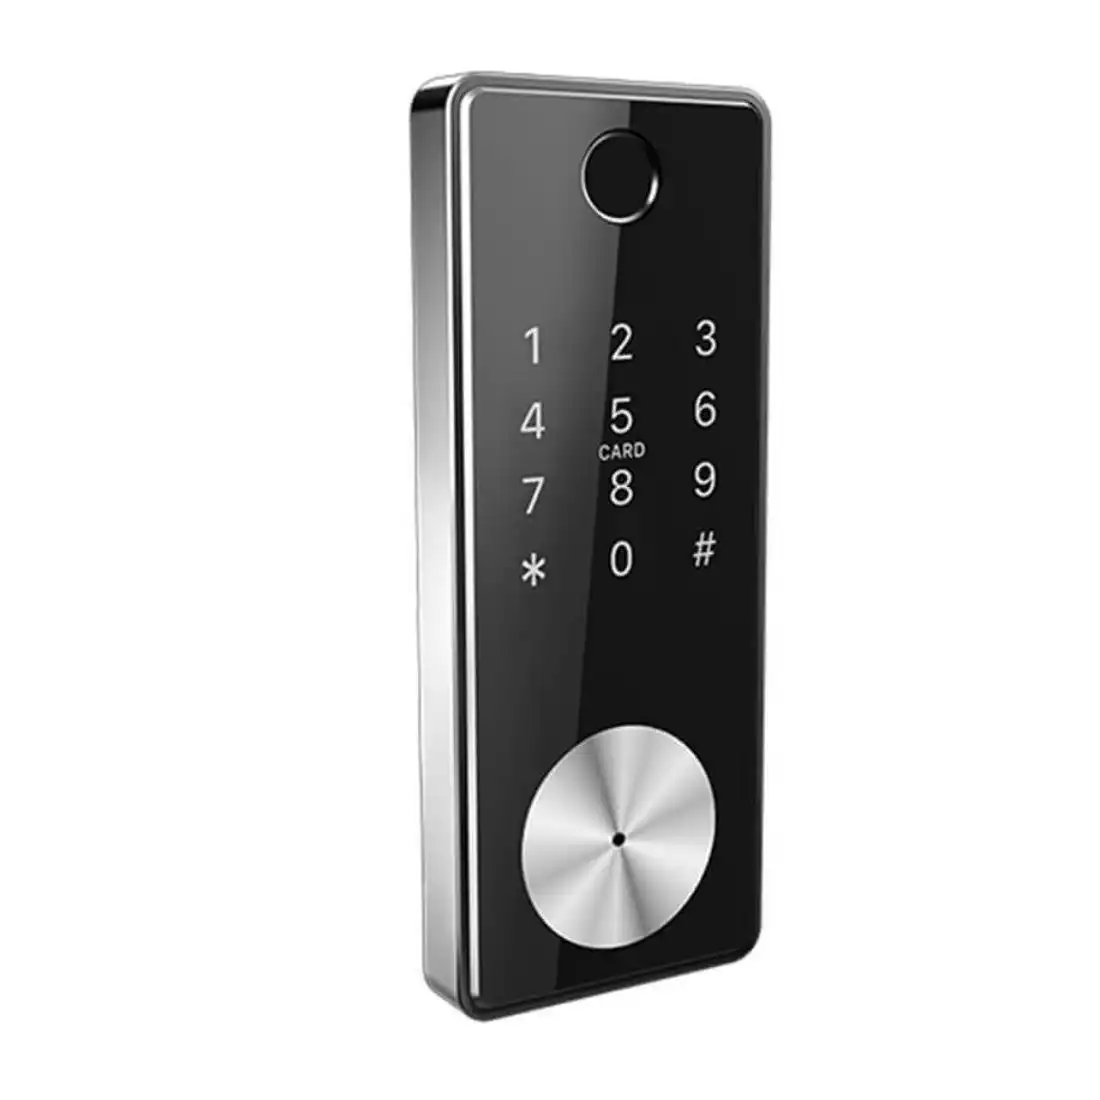 Auslock Deadbolt Series D11B Smart Finger Print Door Lock - Silver/Black